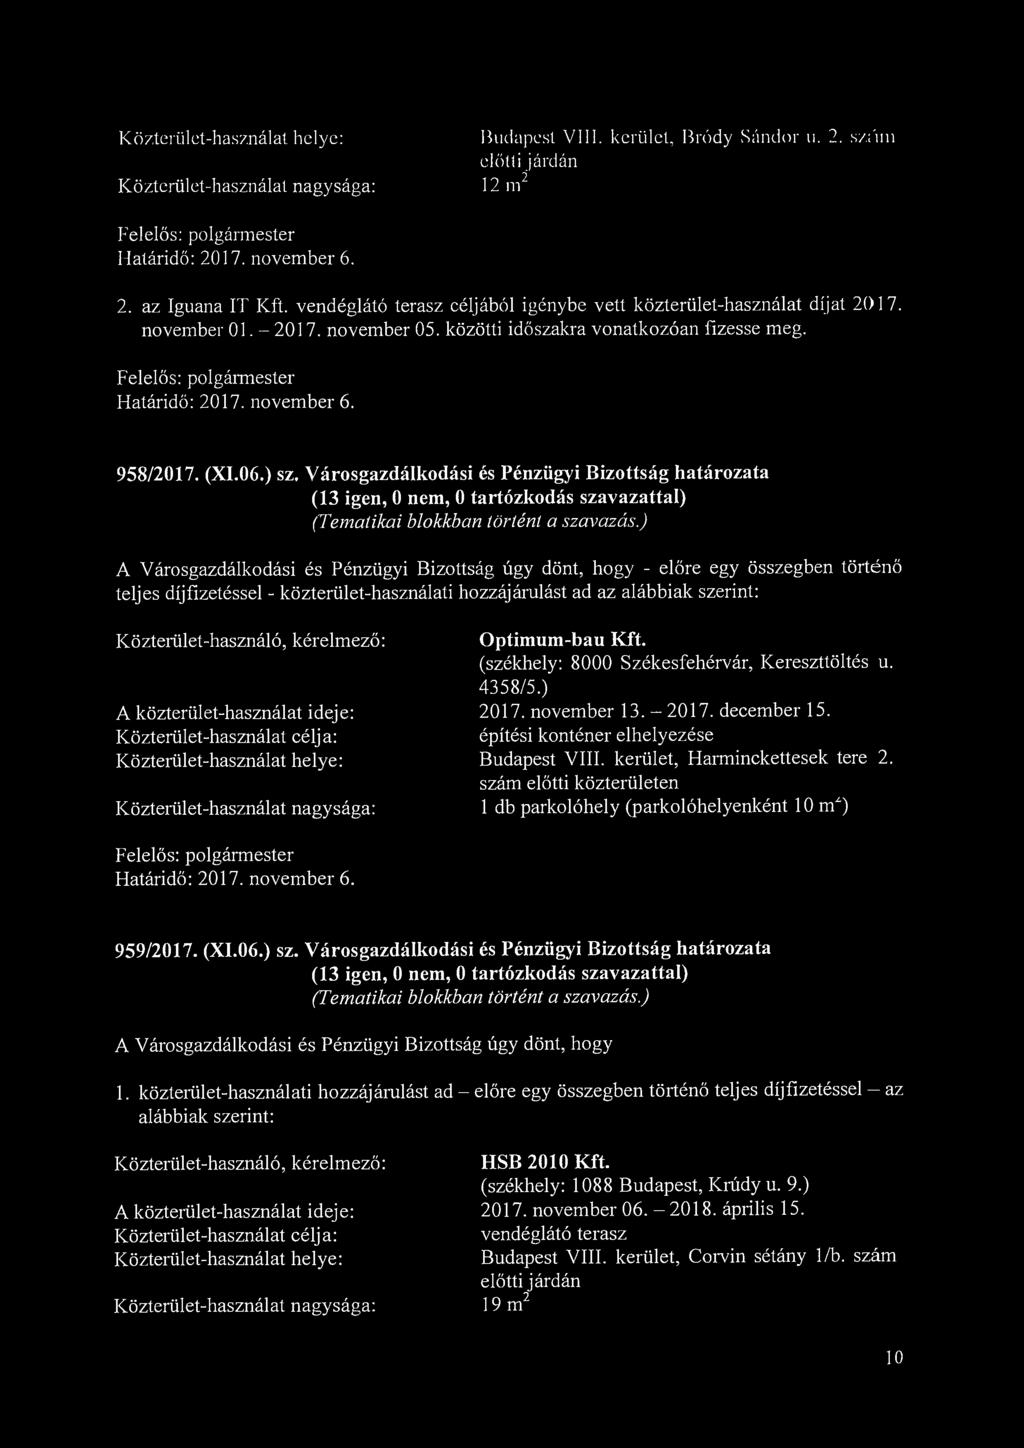 Budapest VIII. kerület, Bródy Sándor u. 2. szfun előtti járdán 2 12 m 2. az Iguana IT Kft. vendéglátó terasz céljából igénybe vett közterület-használat díjat 2017. november 01. - 2017. november 05.